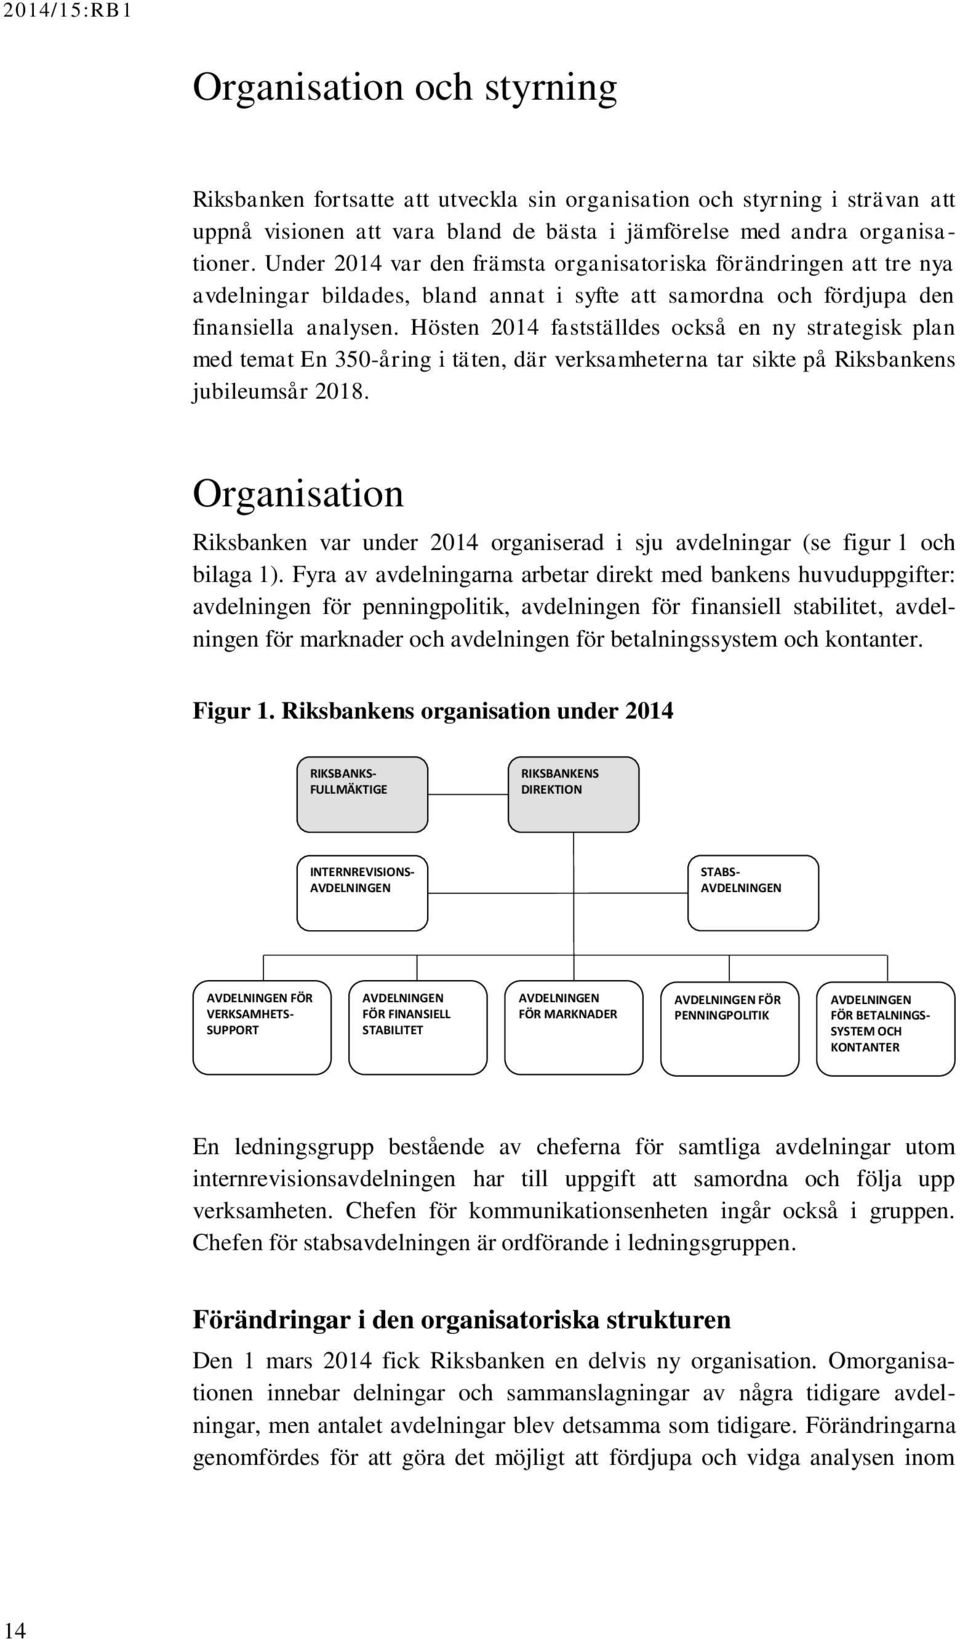 Hösten 2014 fastställdes också en ny strategisk plan med temat En 350-åring i täten, där verksamheterna tar sikte på Riksbankens jubileumsår 2018.